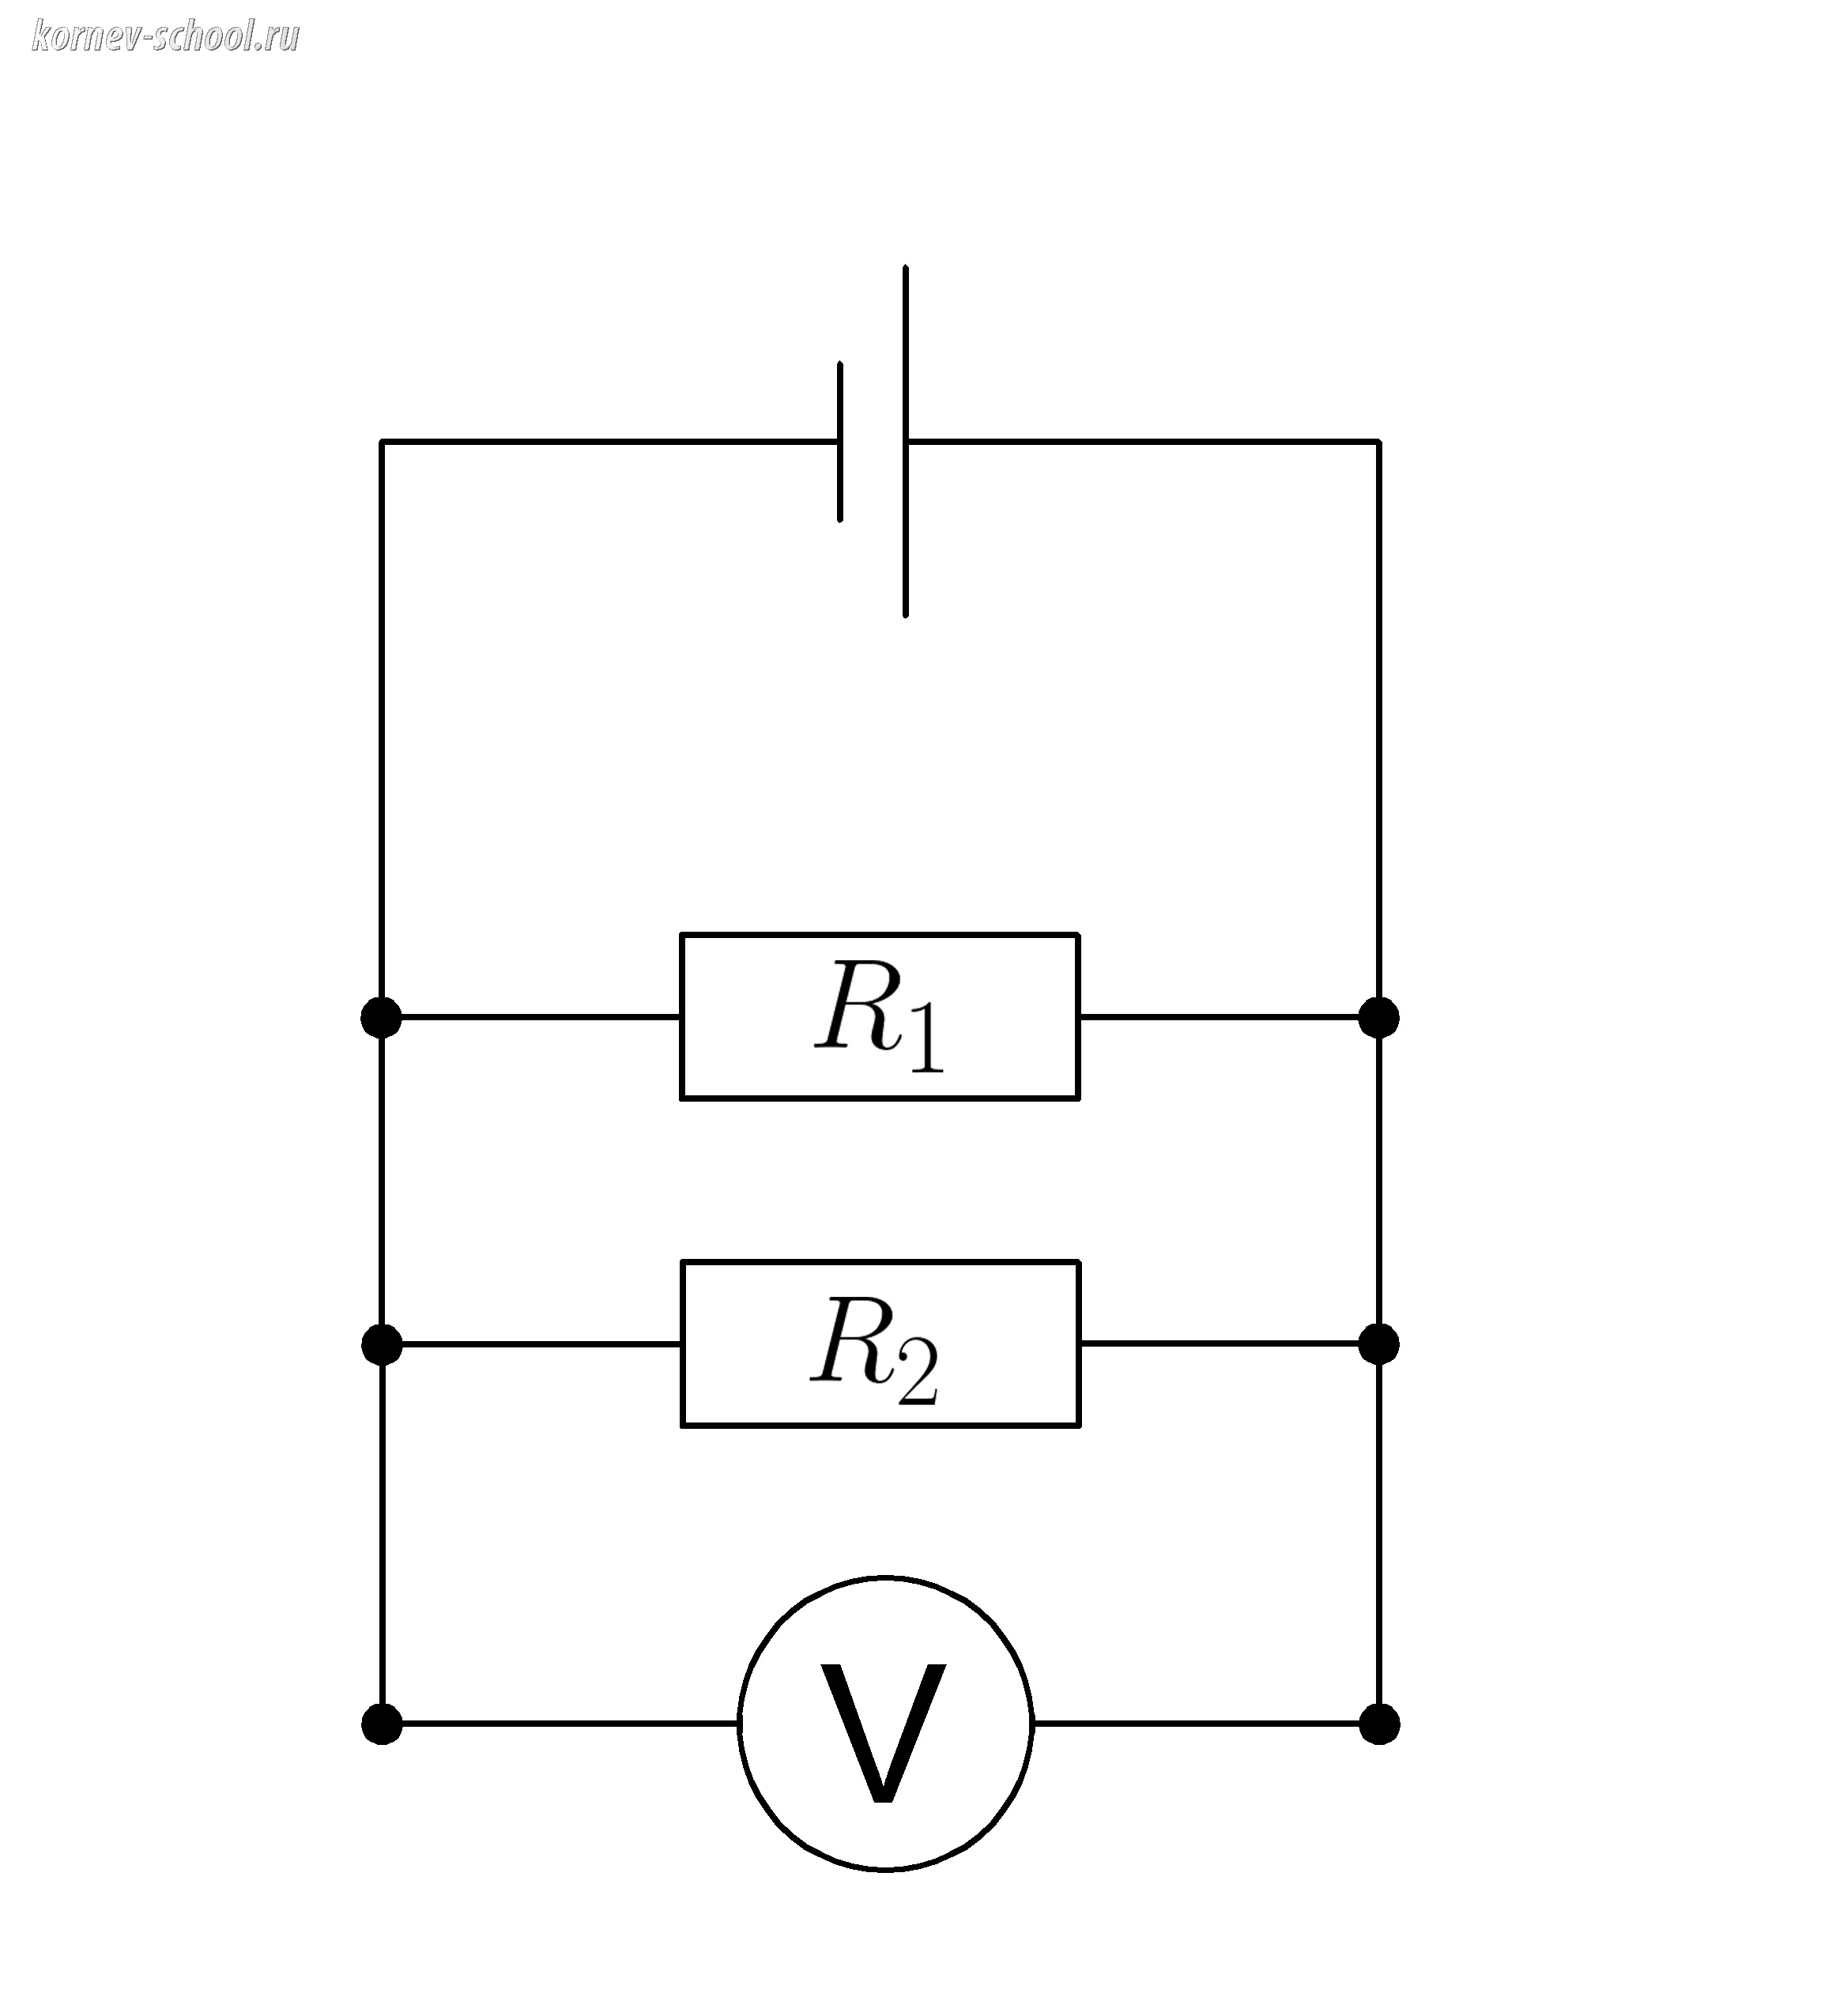 Смешанное соединение проводников. Расчёт электрических цепей [1] Задачи по физике 8 класс и смешанная система соединения материалов